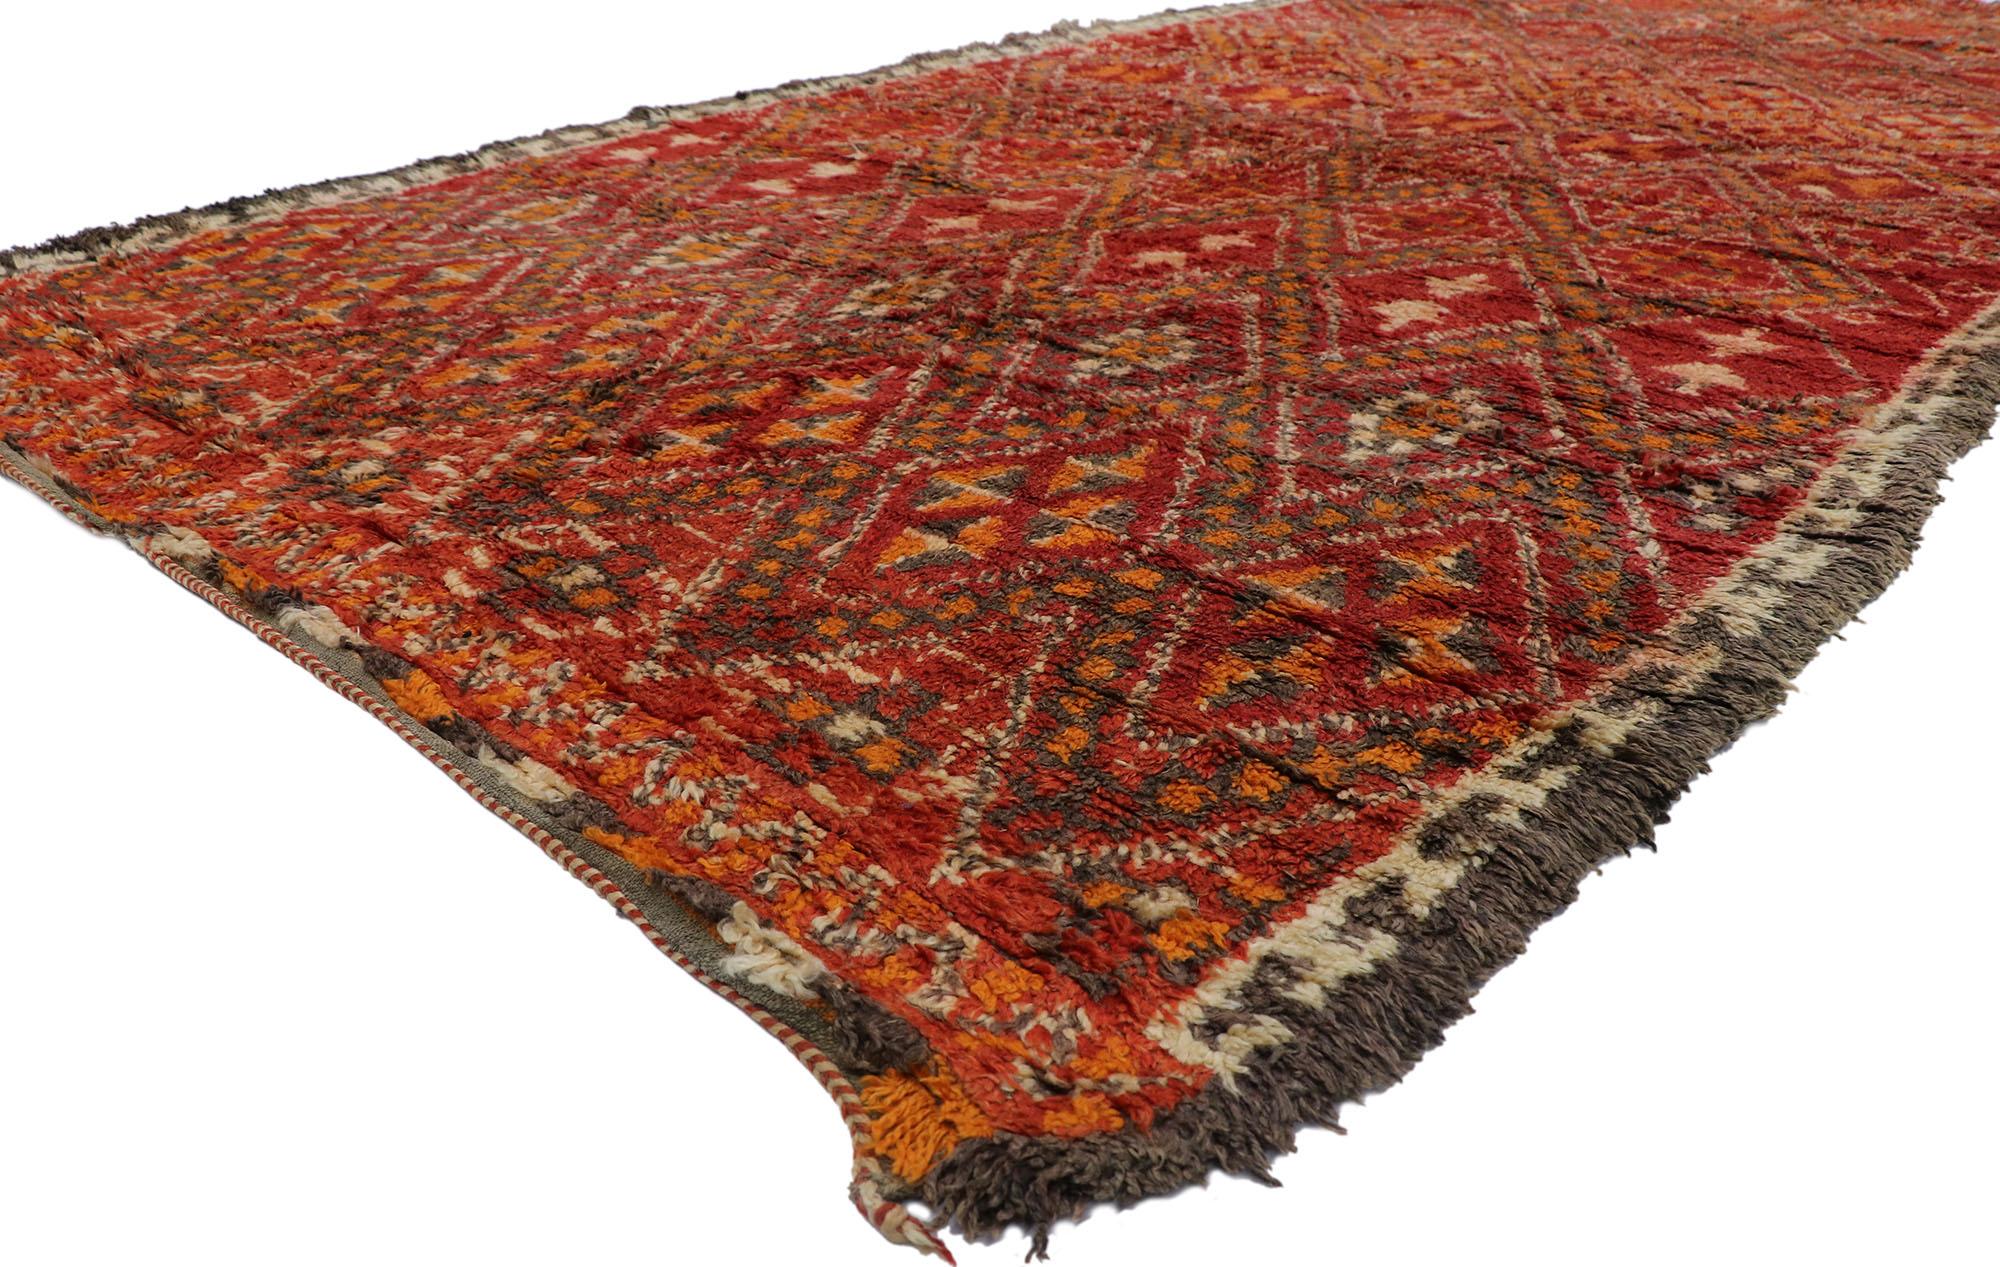 21228 Vintage Berber Beni M'Guild Red Moroccan Rug with Tribal Style 07'03 x 15'04. Avec son design expressif et audacieux, ses détails et sa texture incroyables, ce tapis berbère vintage Beni M'Guild en laine nouée à la main est une vision